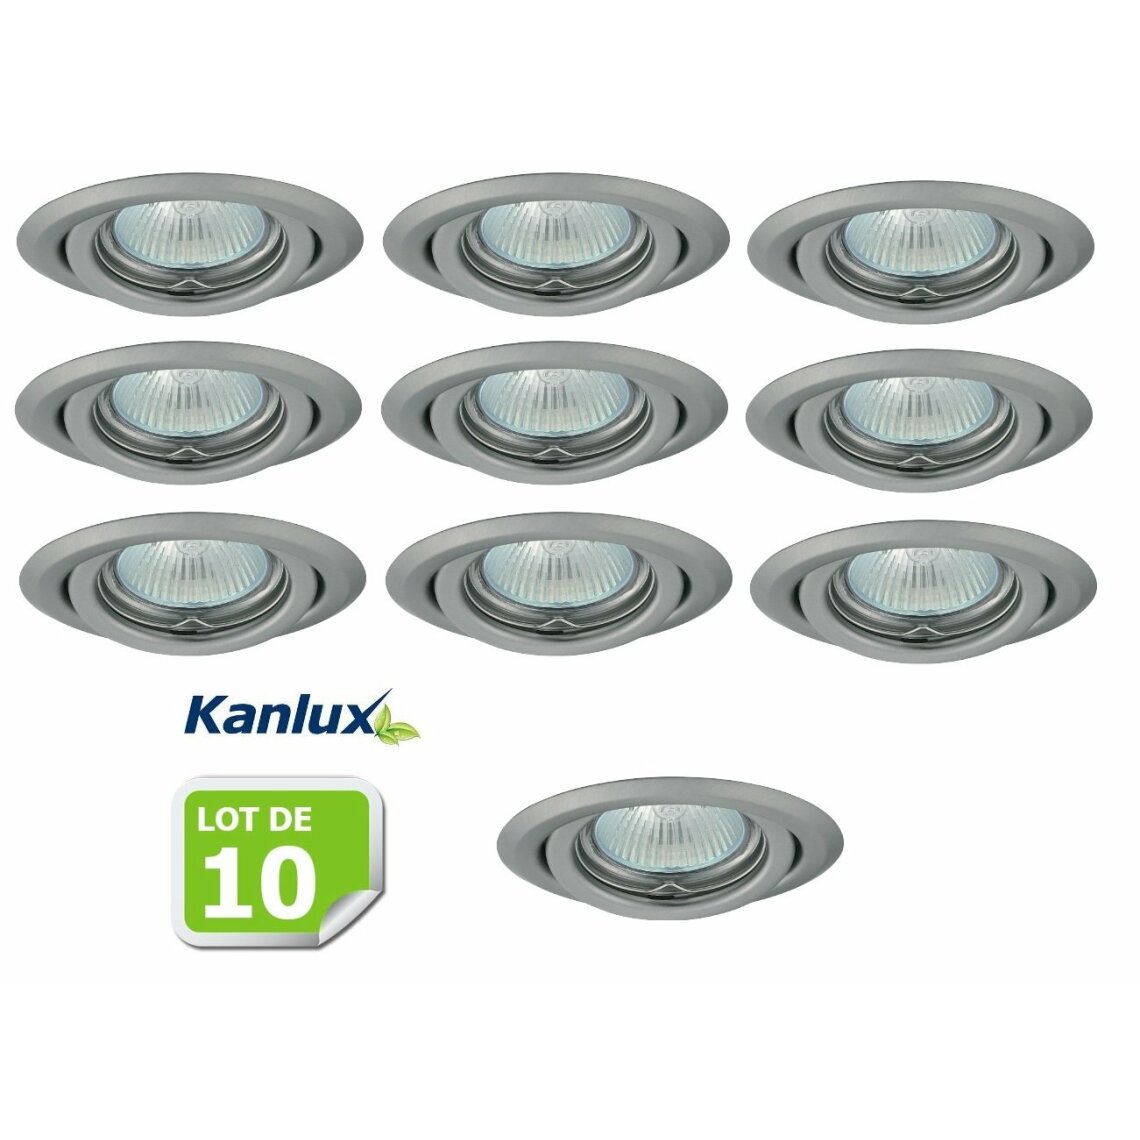 Kanlux - Lot de 10 Fixation de spot encastrable orientable chrome matt D99mm marque Kanlux ref 26798 - Boîtes d'encastrement